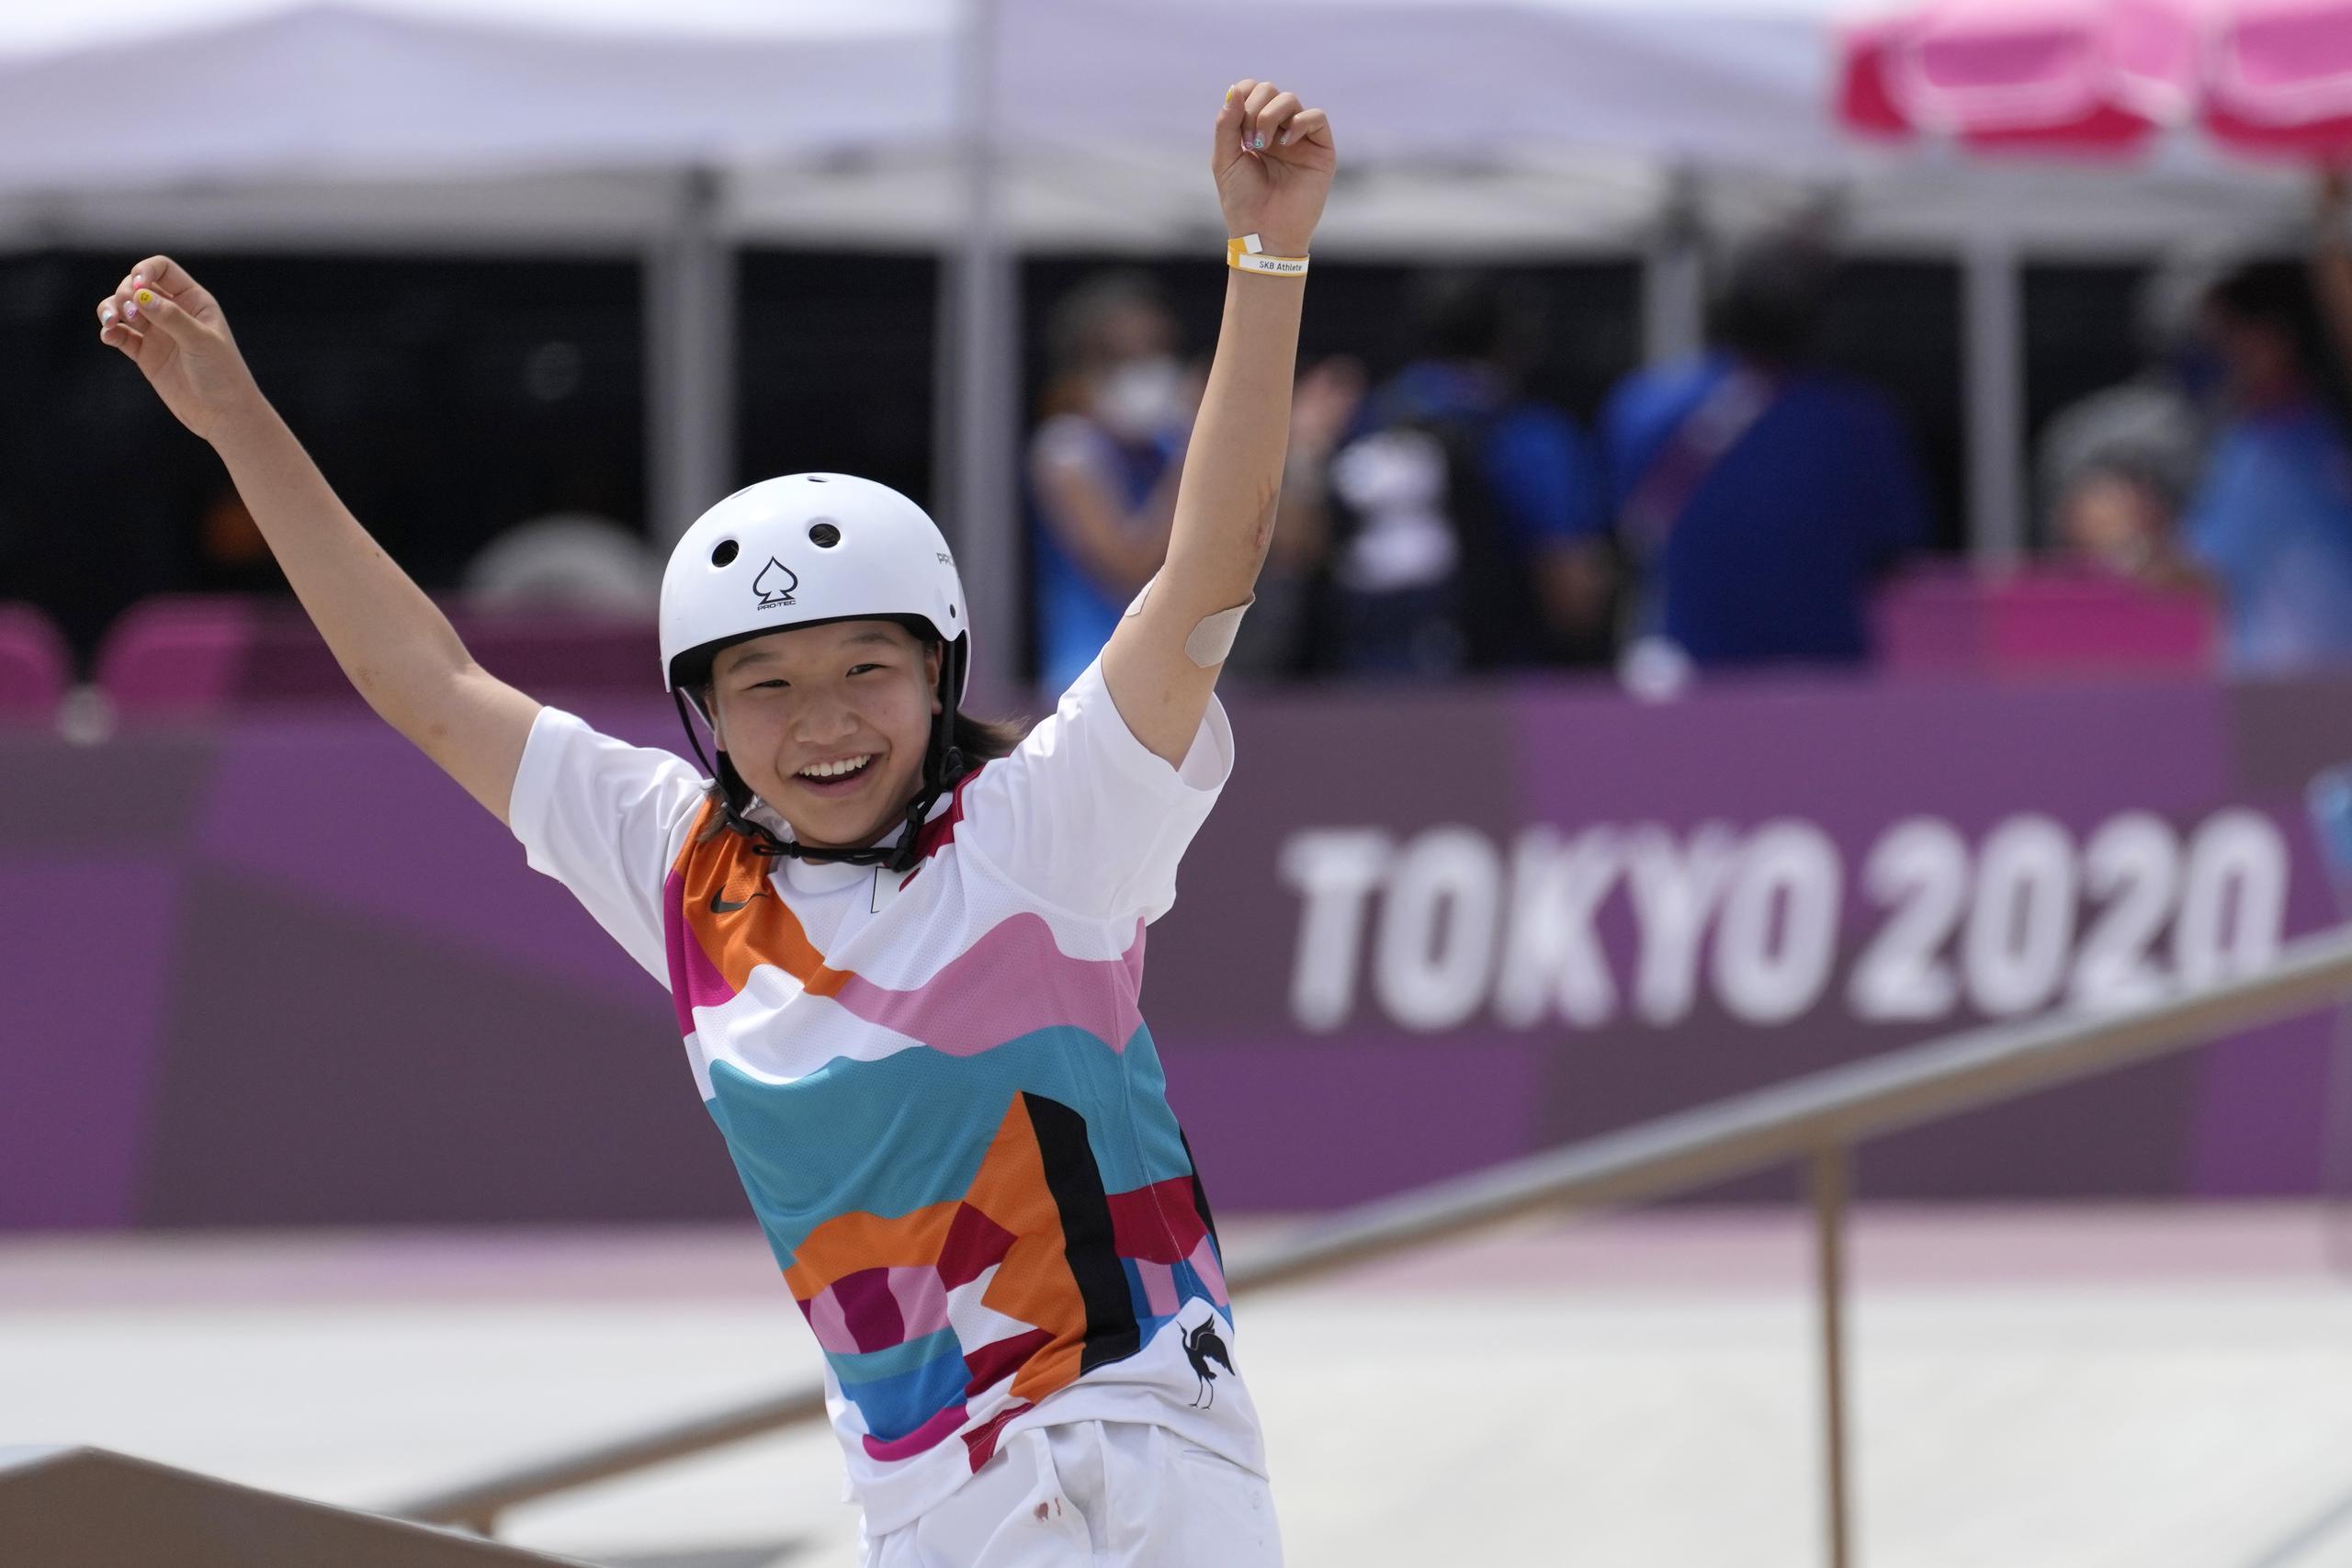 La japonesa Momiji Nishiya celebra después de ganar la final de skateboarding para mujeres en los Juegos Olímpicos 2020.